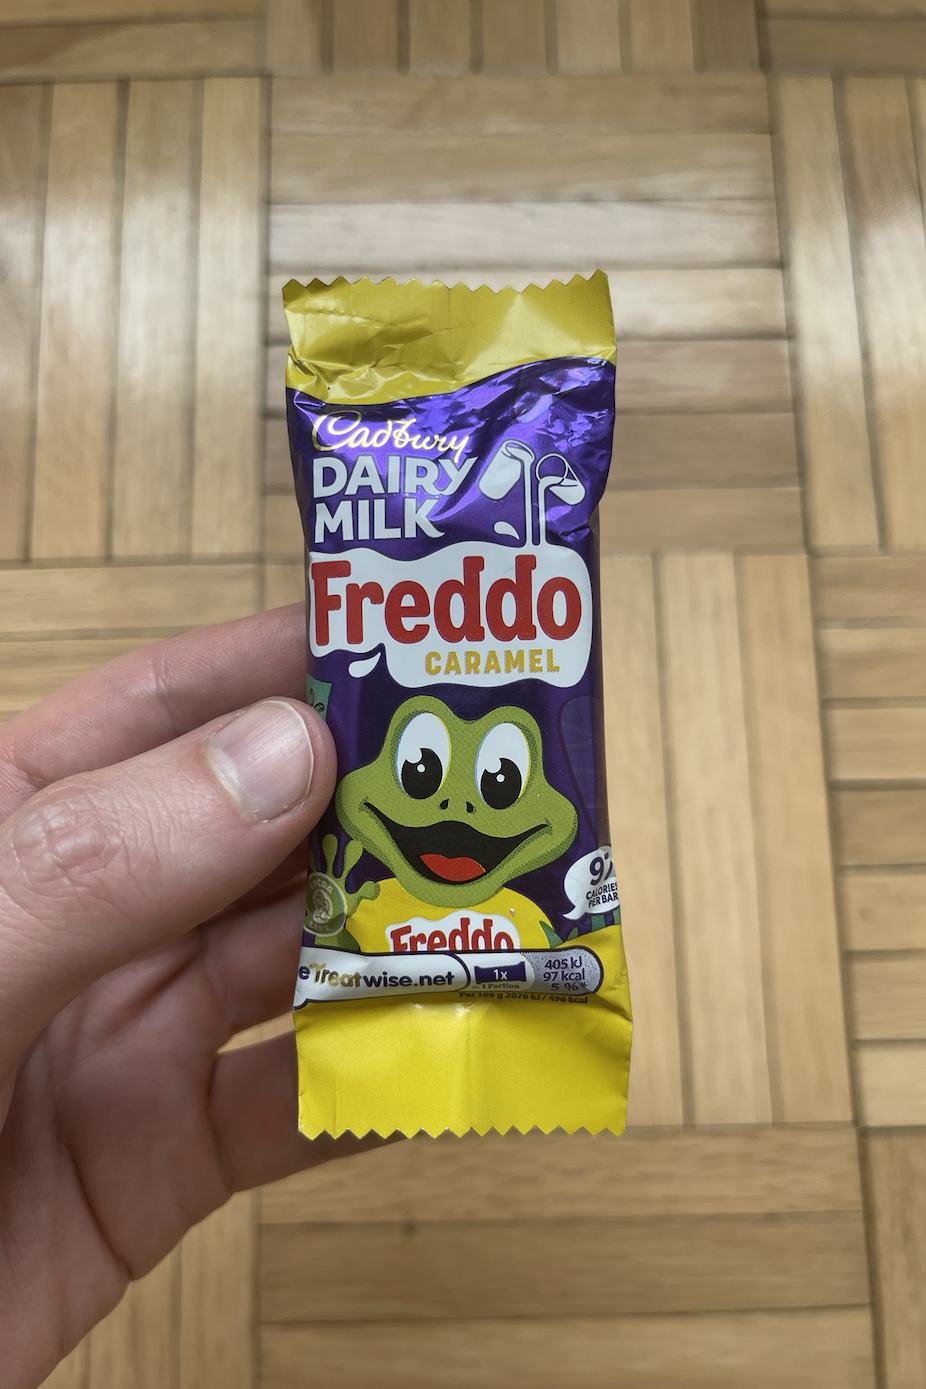 A hand holding a Cadbury Dairy Milk Freddo Caramel chocolate bar